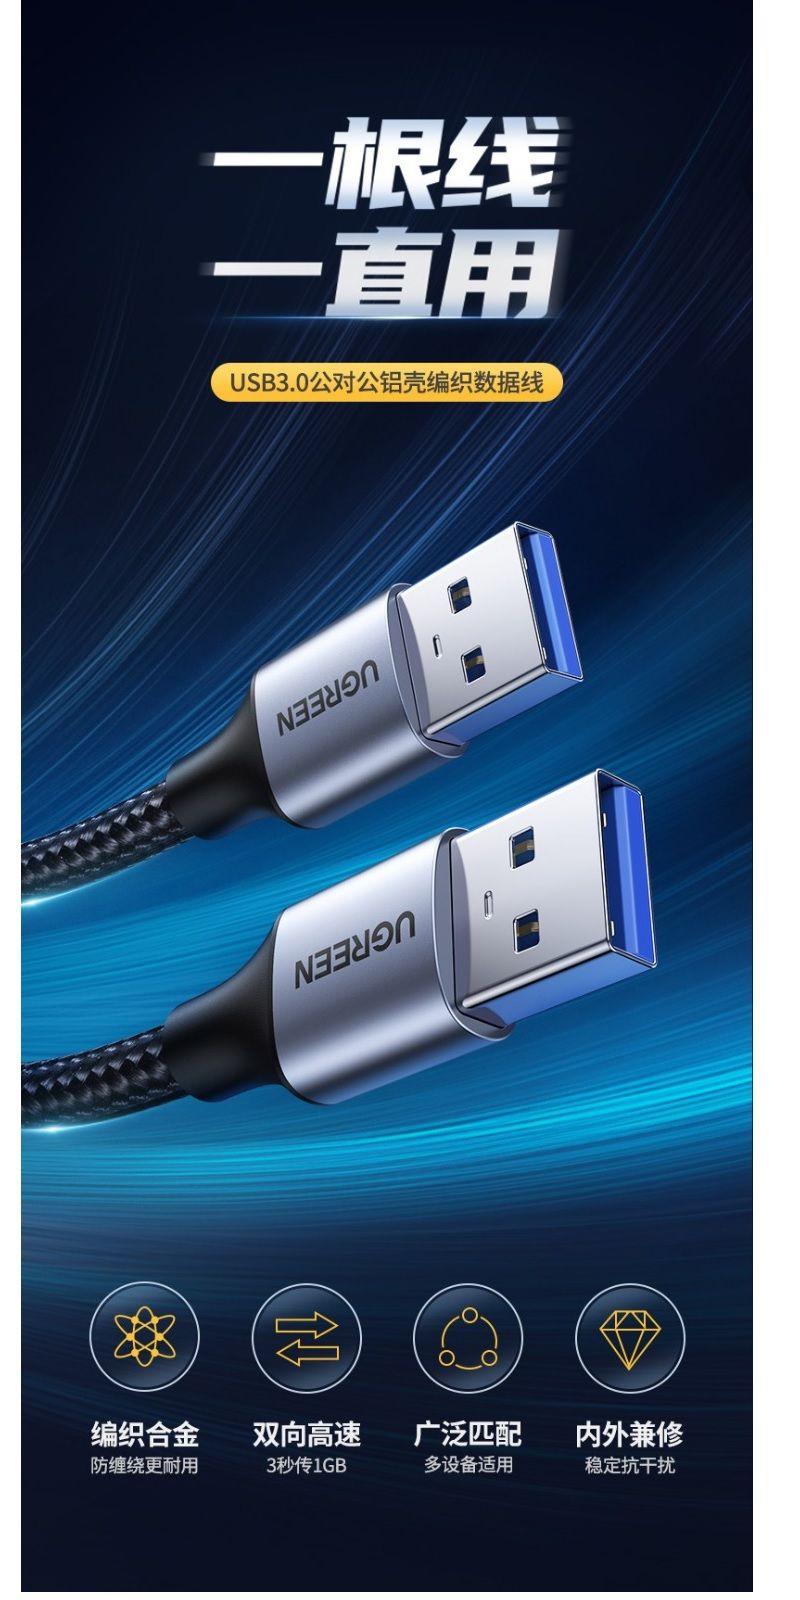 Ugreen 80791 2M Cáp USB 3.0 Type-A hai đầu dương dây bọc dù Màu Đen Ugreen US373 - Hàng Chính Hãng